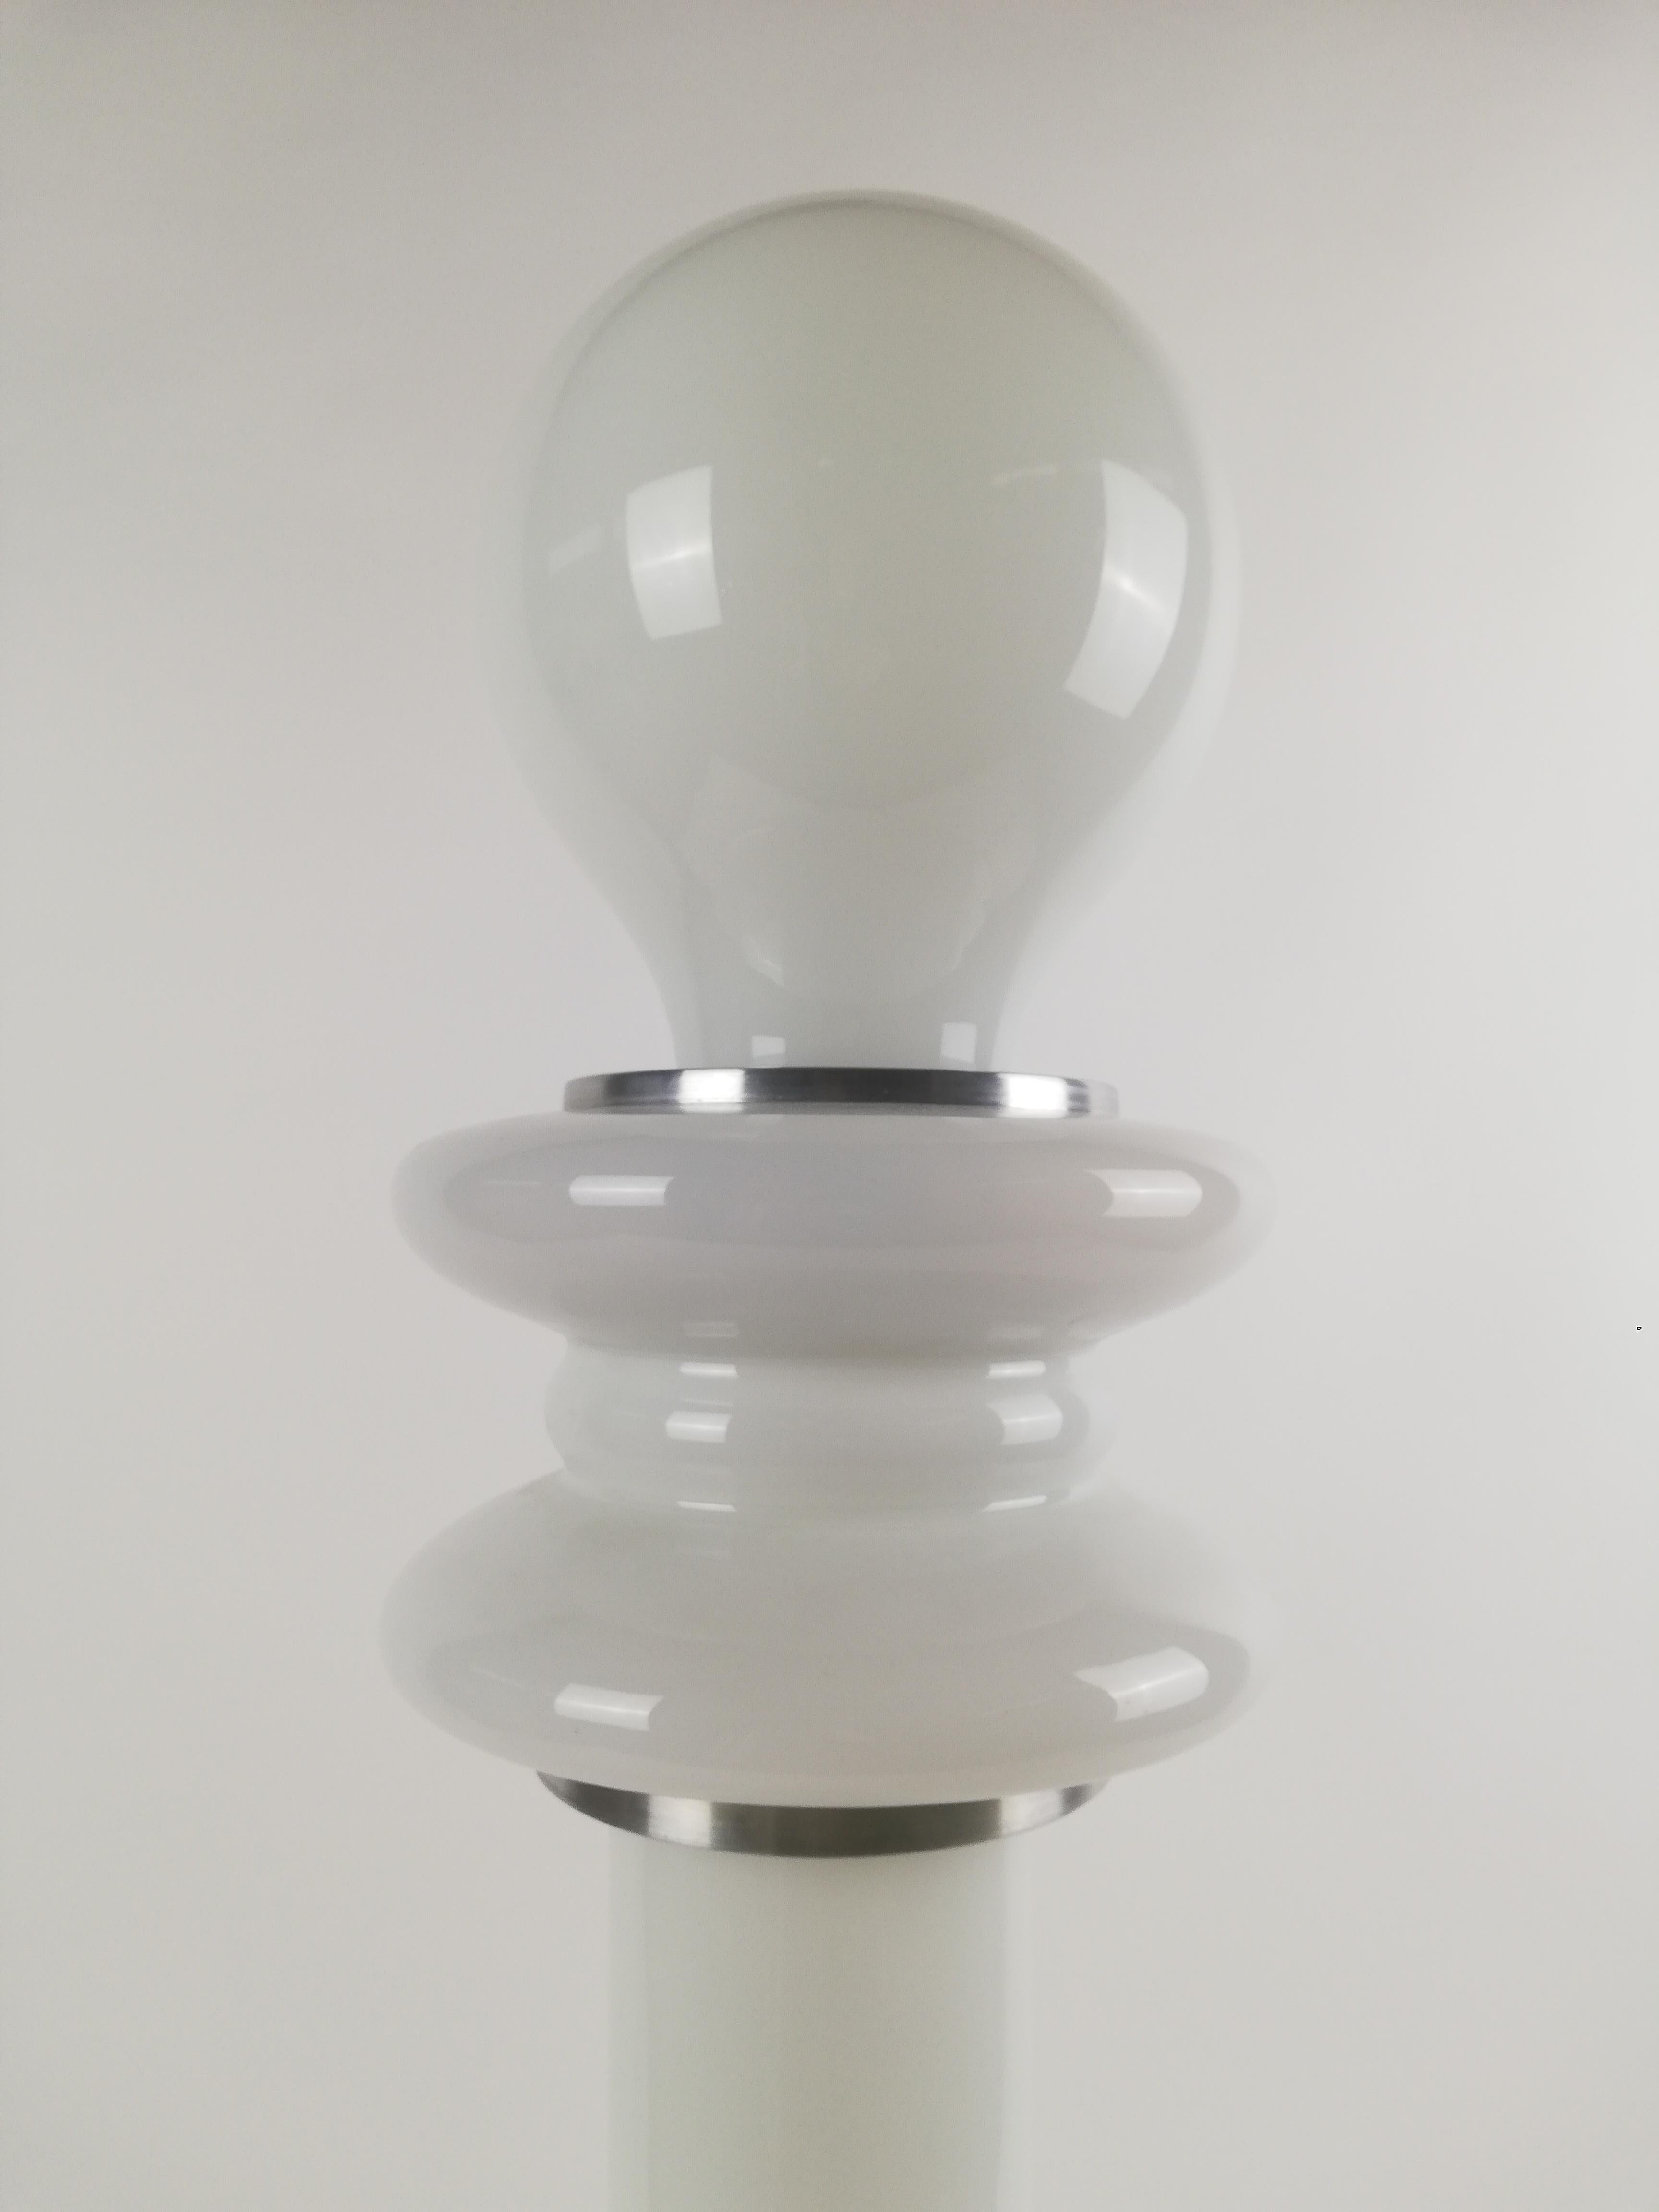 Splendide lampadaire fabriqué en Italie entre les années 1960 et 1970 dans le style des produits conçus par Carlo Nason.
Le lampadaire a la forme de champignon typique des lampes de l'ère spatiale.
Il est composé de 3 parties en verre opalin blanc ,